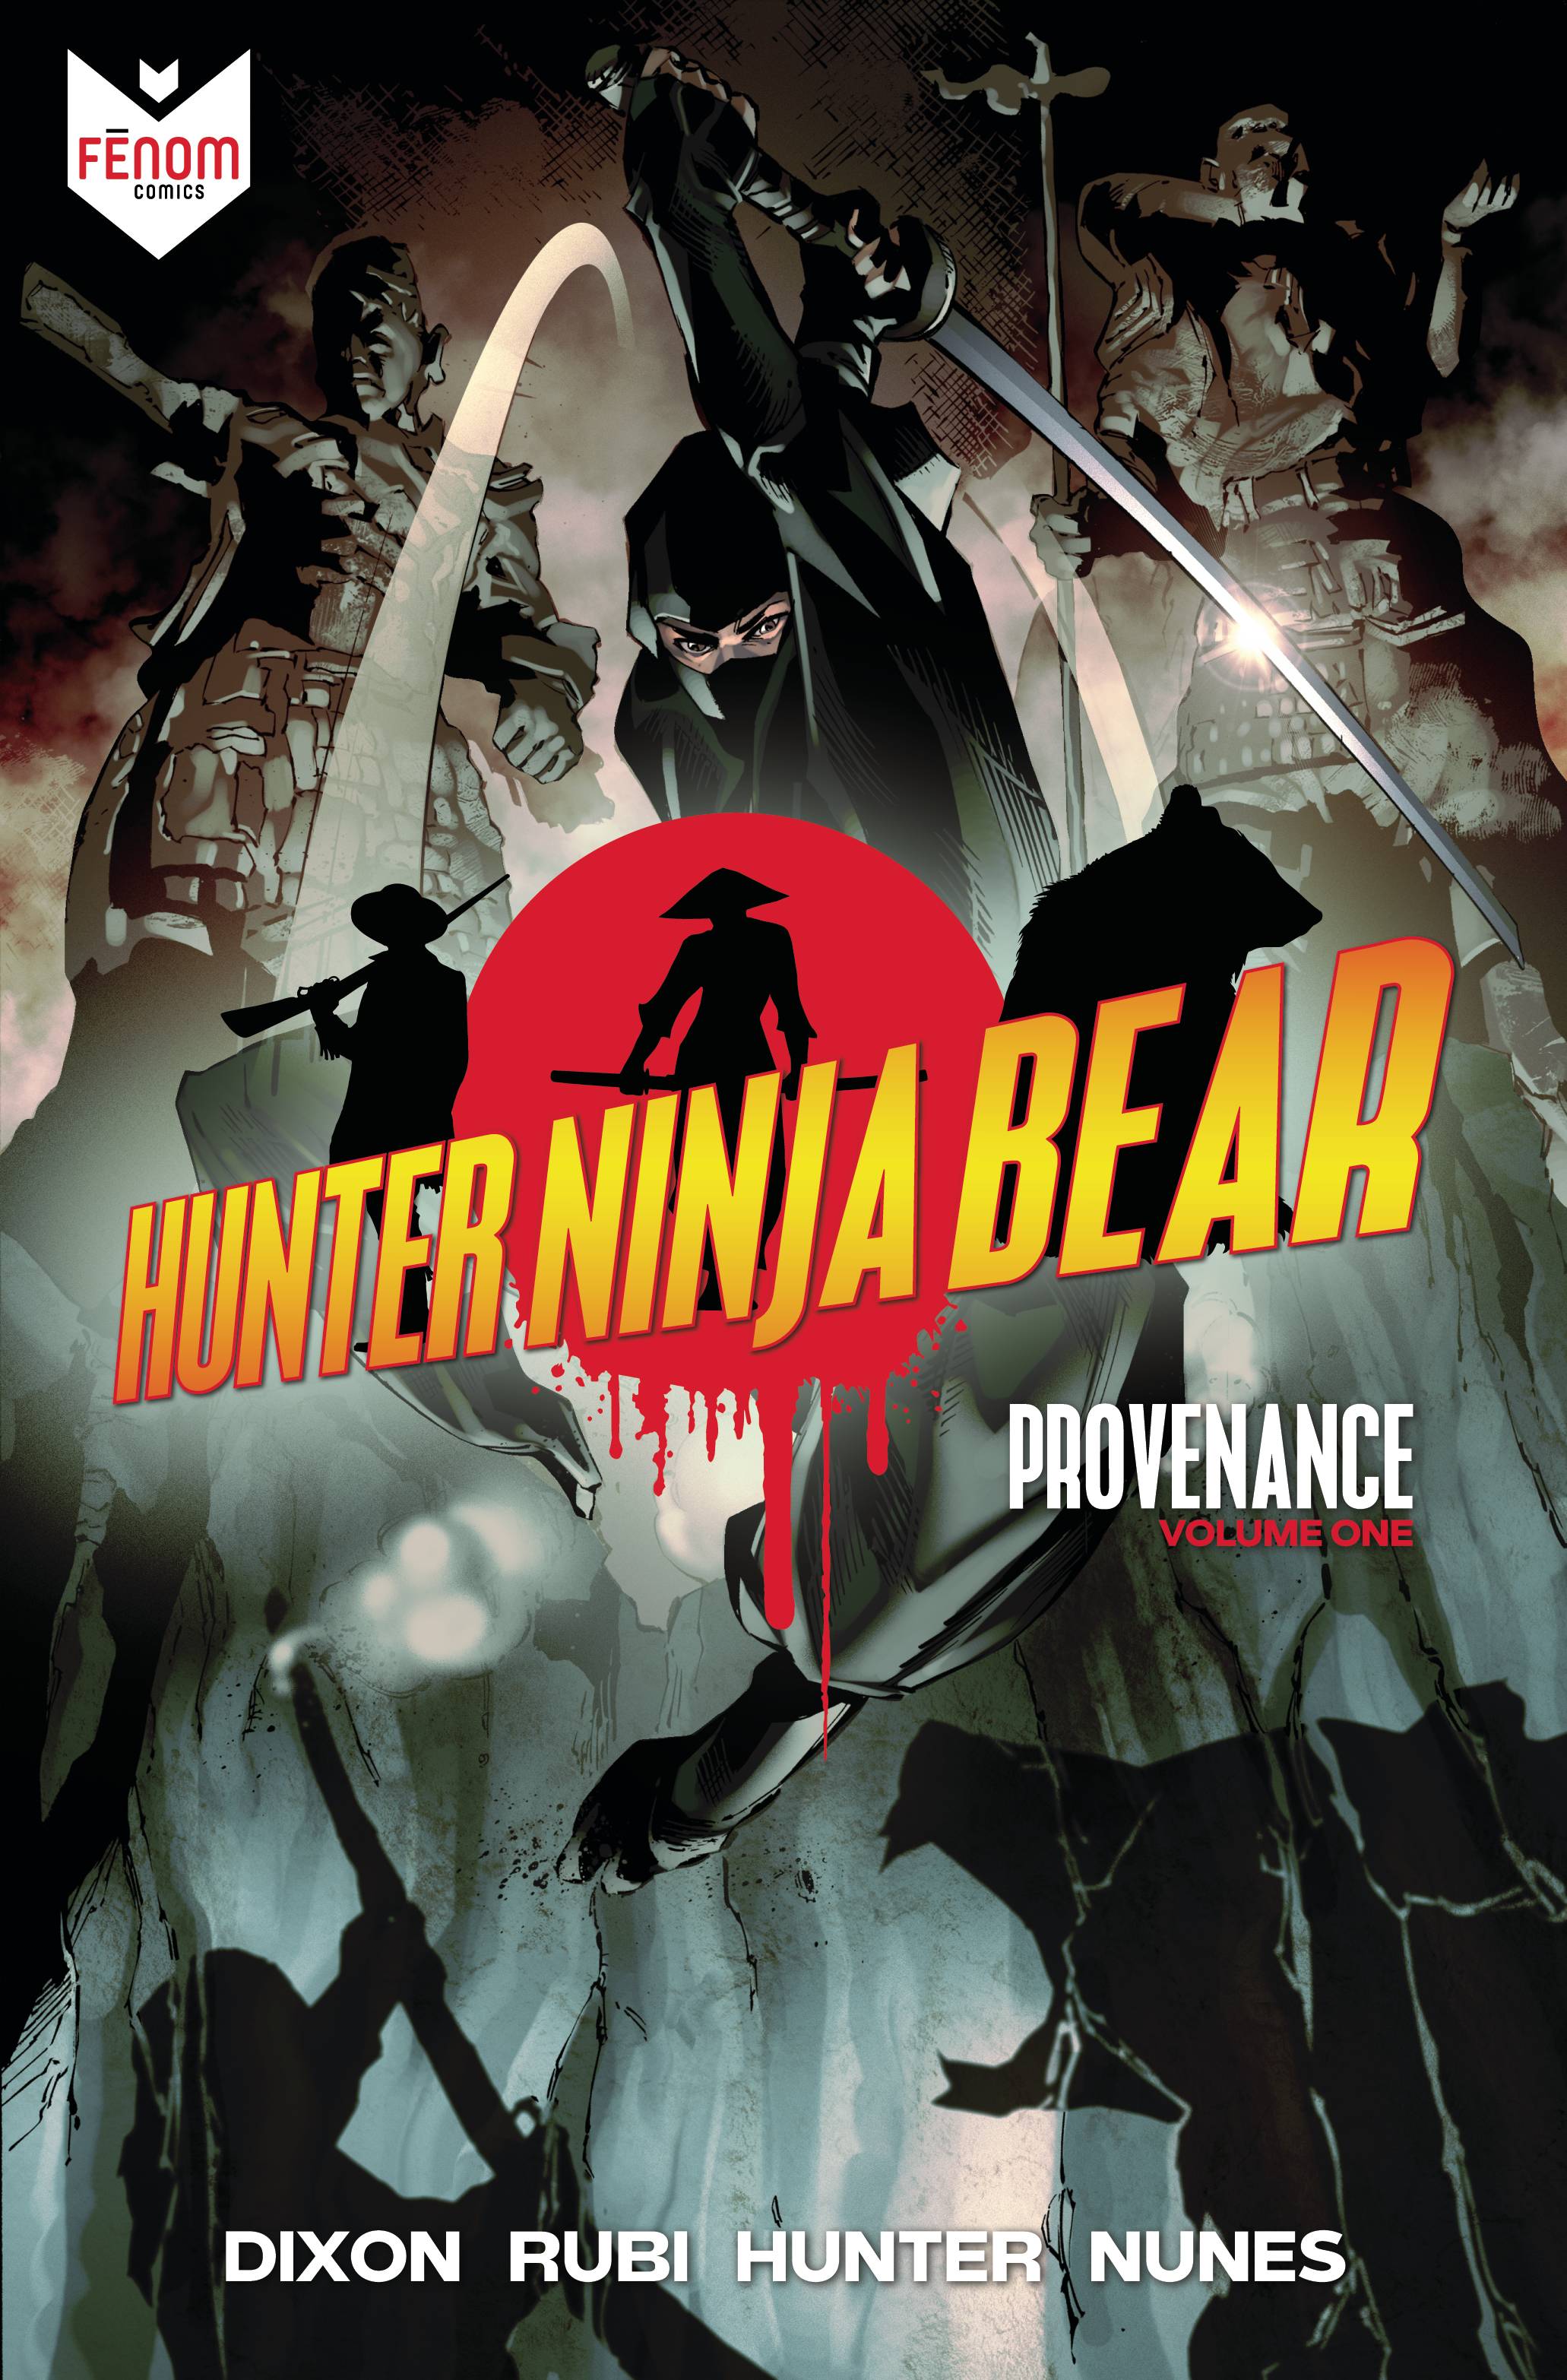 Hunter ninja bear comic